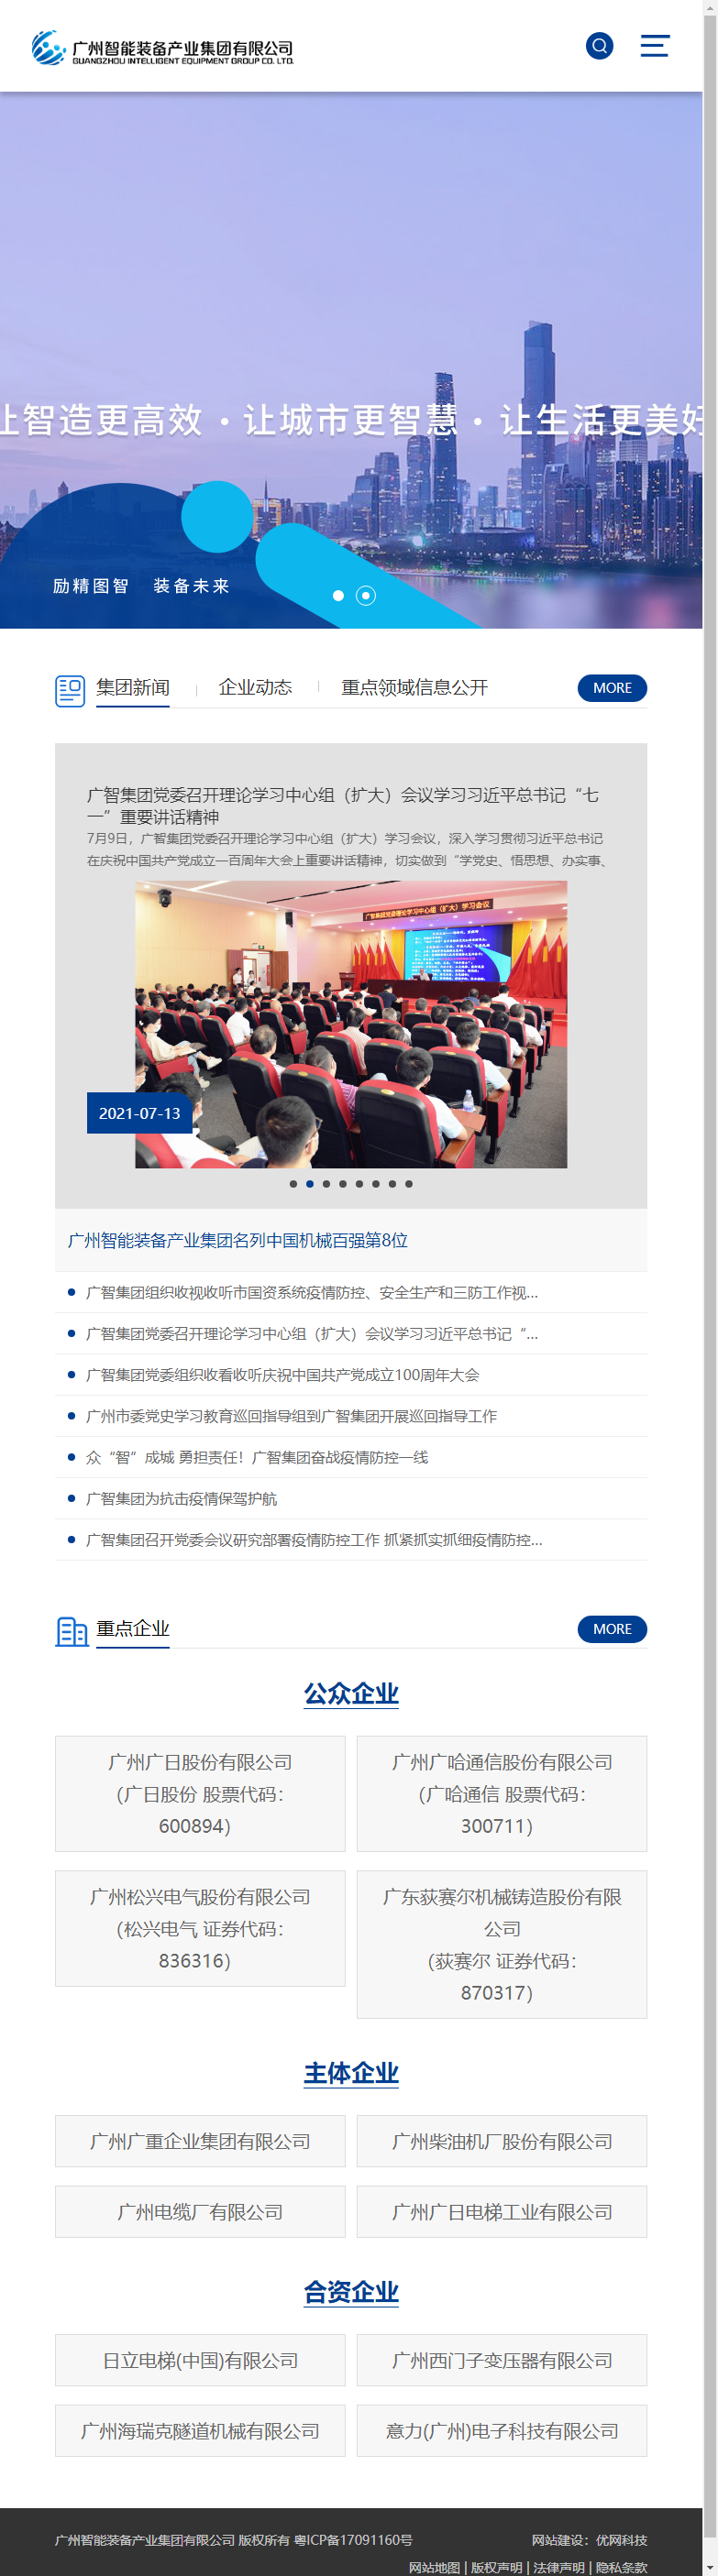 广州智能装备产业集团有限公司网站案例